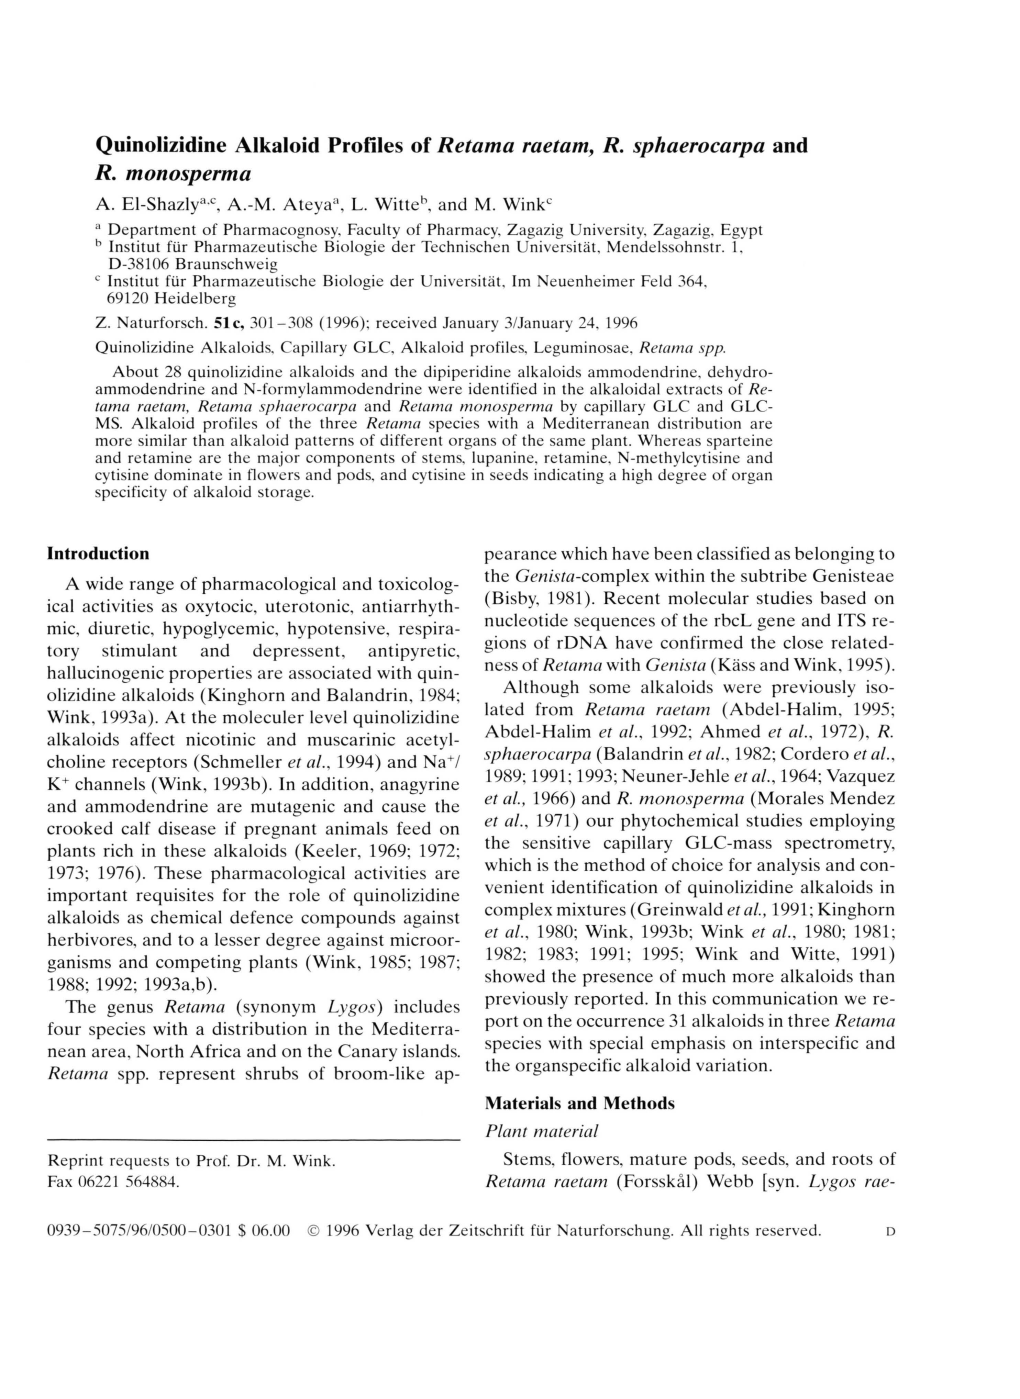 Quinolizidine Alkaloid Profiles of Retama Raetam, R